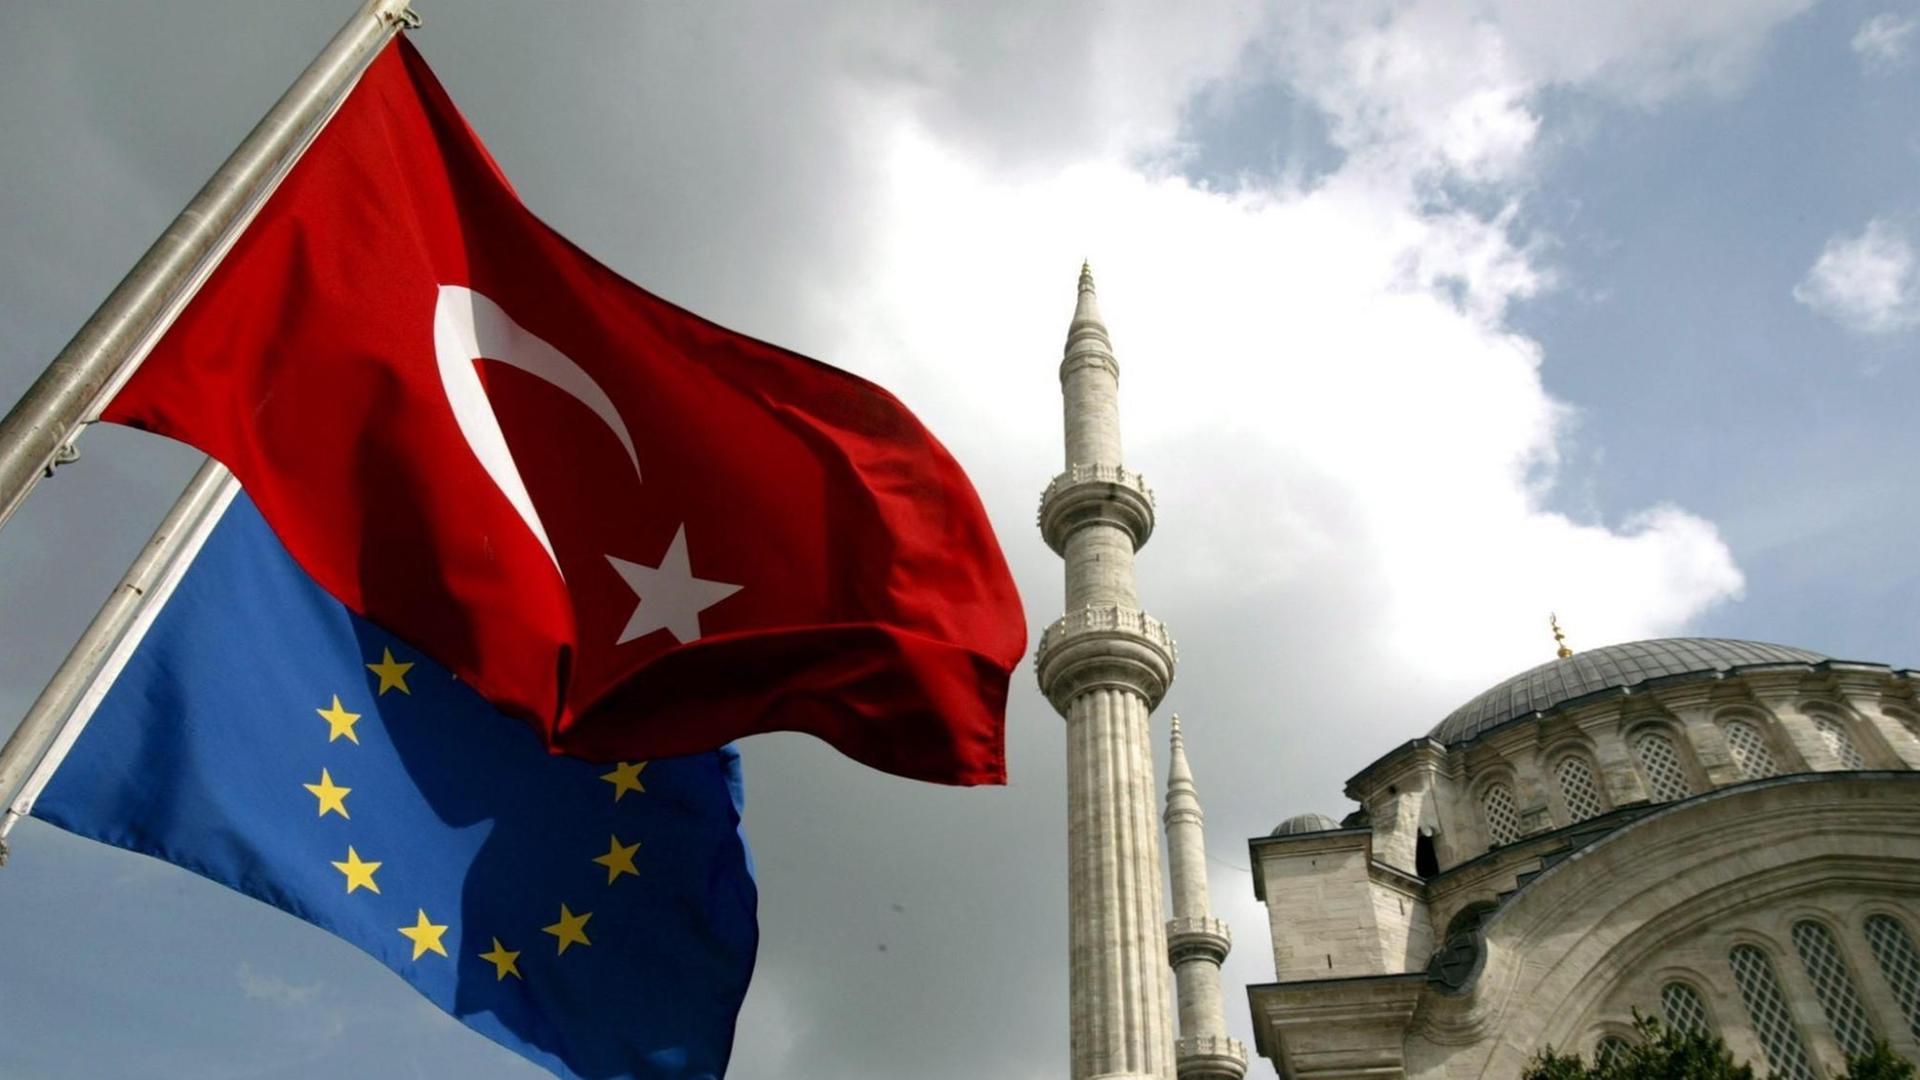 Die türkische und die europäische Flagge wehen vor der Nuruosmaniye-Moschee in Istanbul.